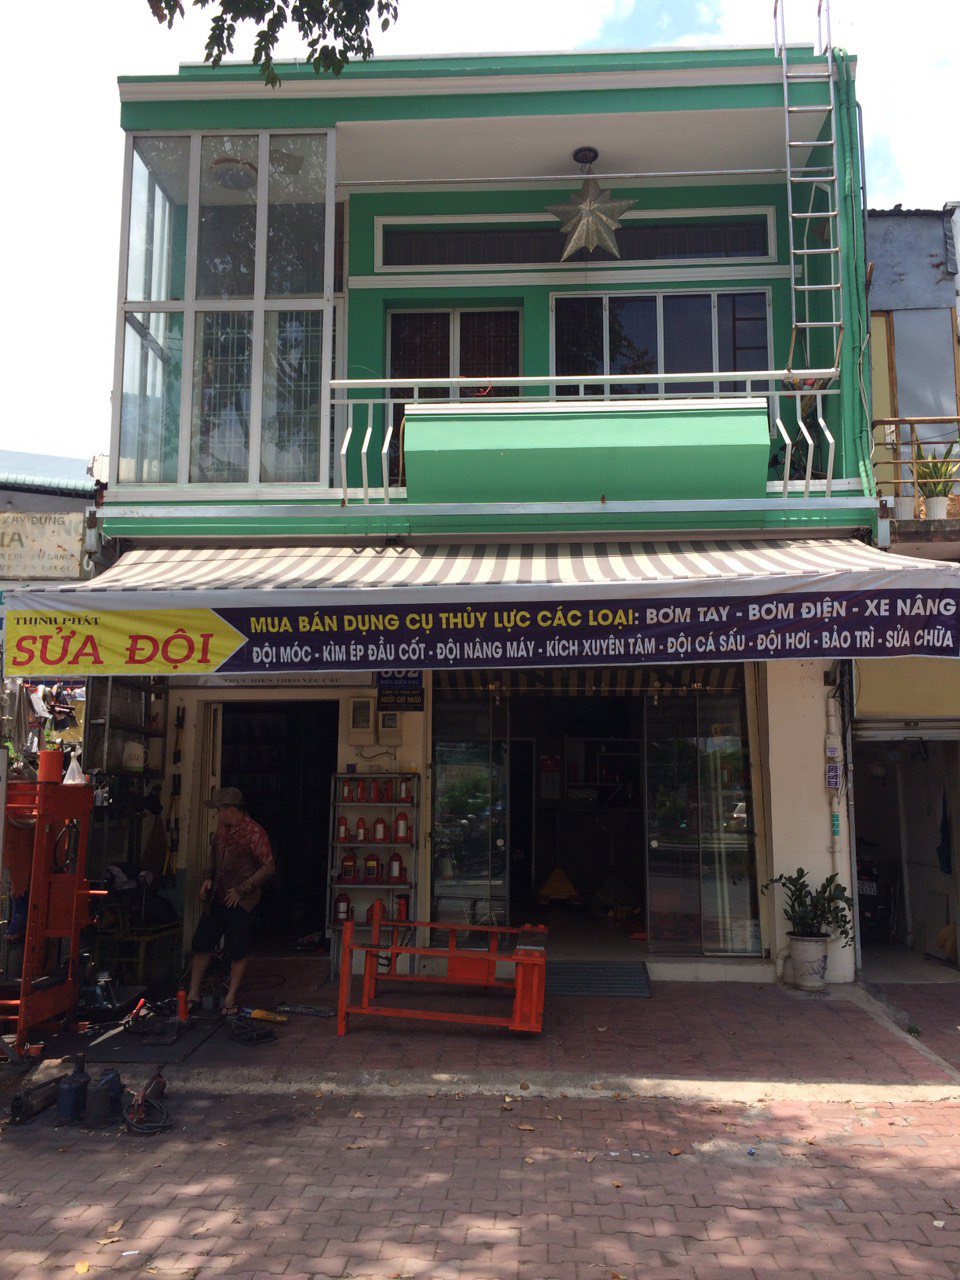 Bán nhà đường Điện Biên Phủ quận Bình Thạnh cách 